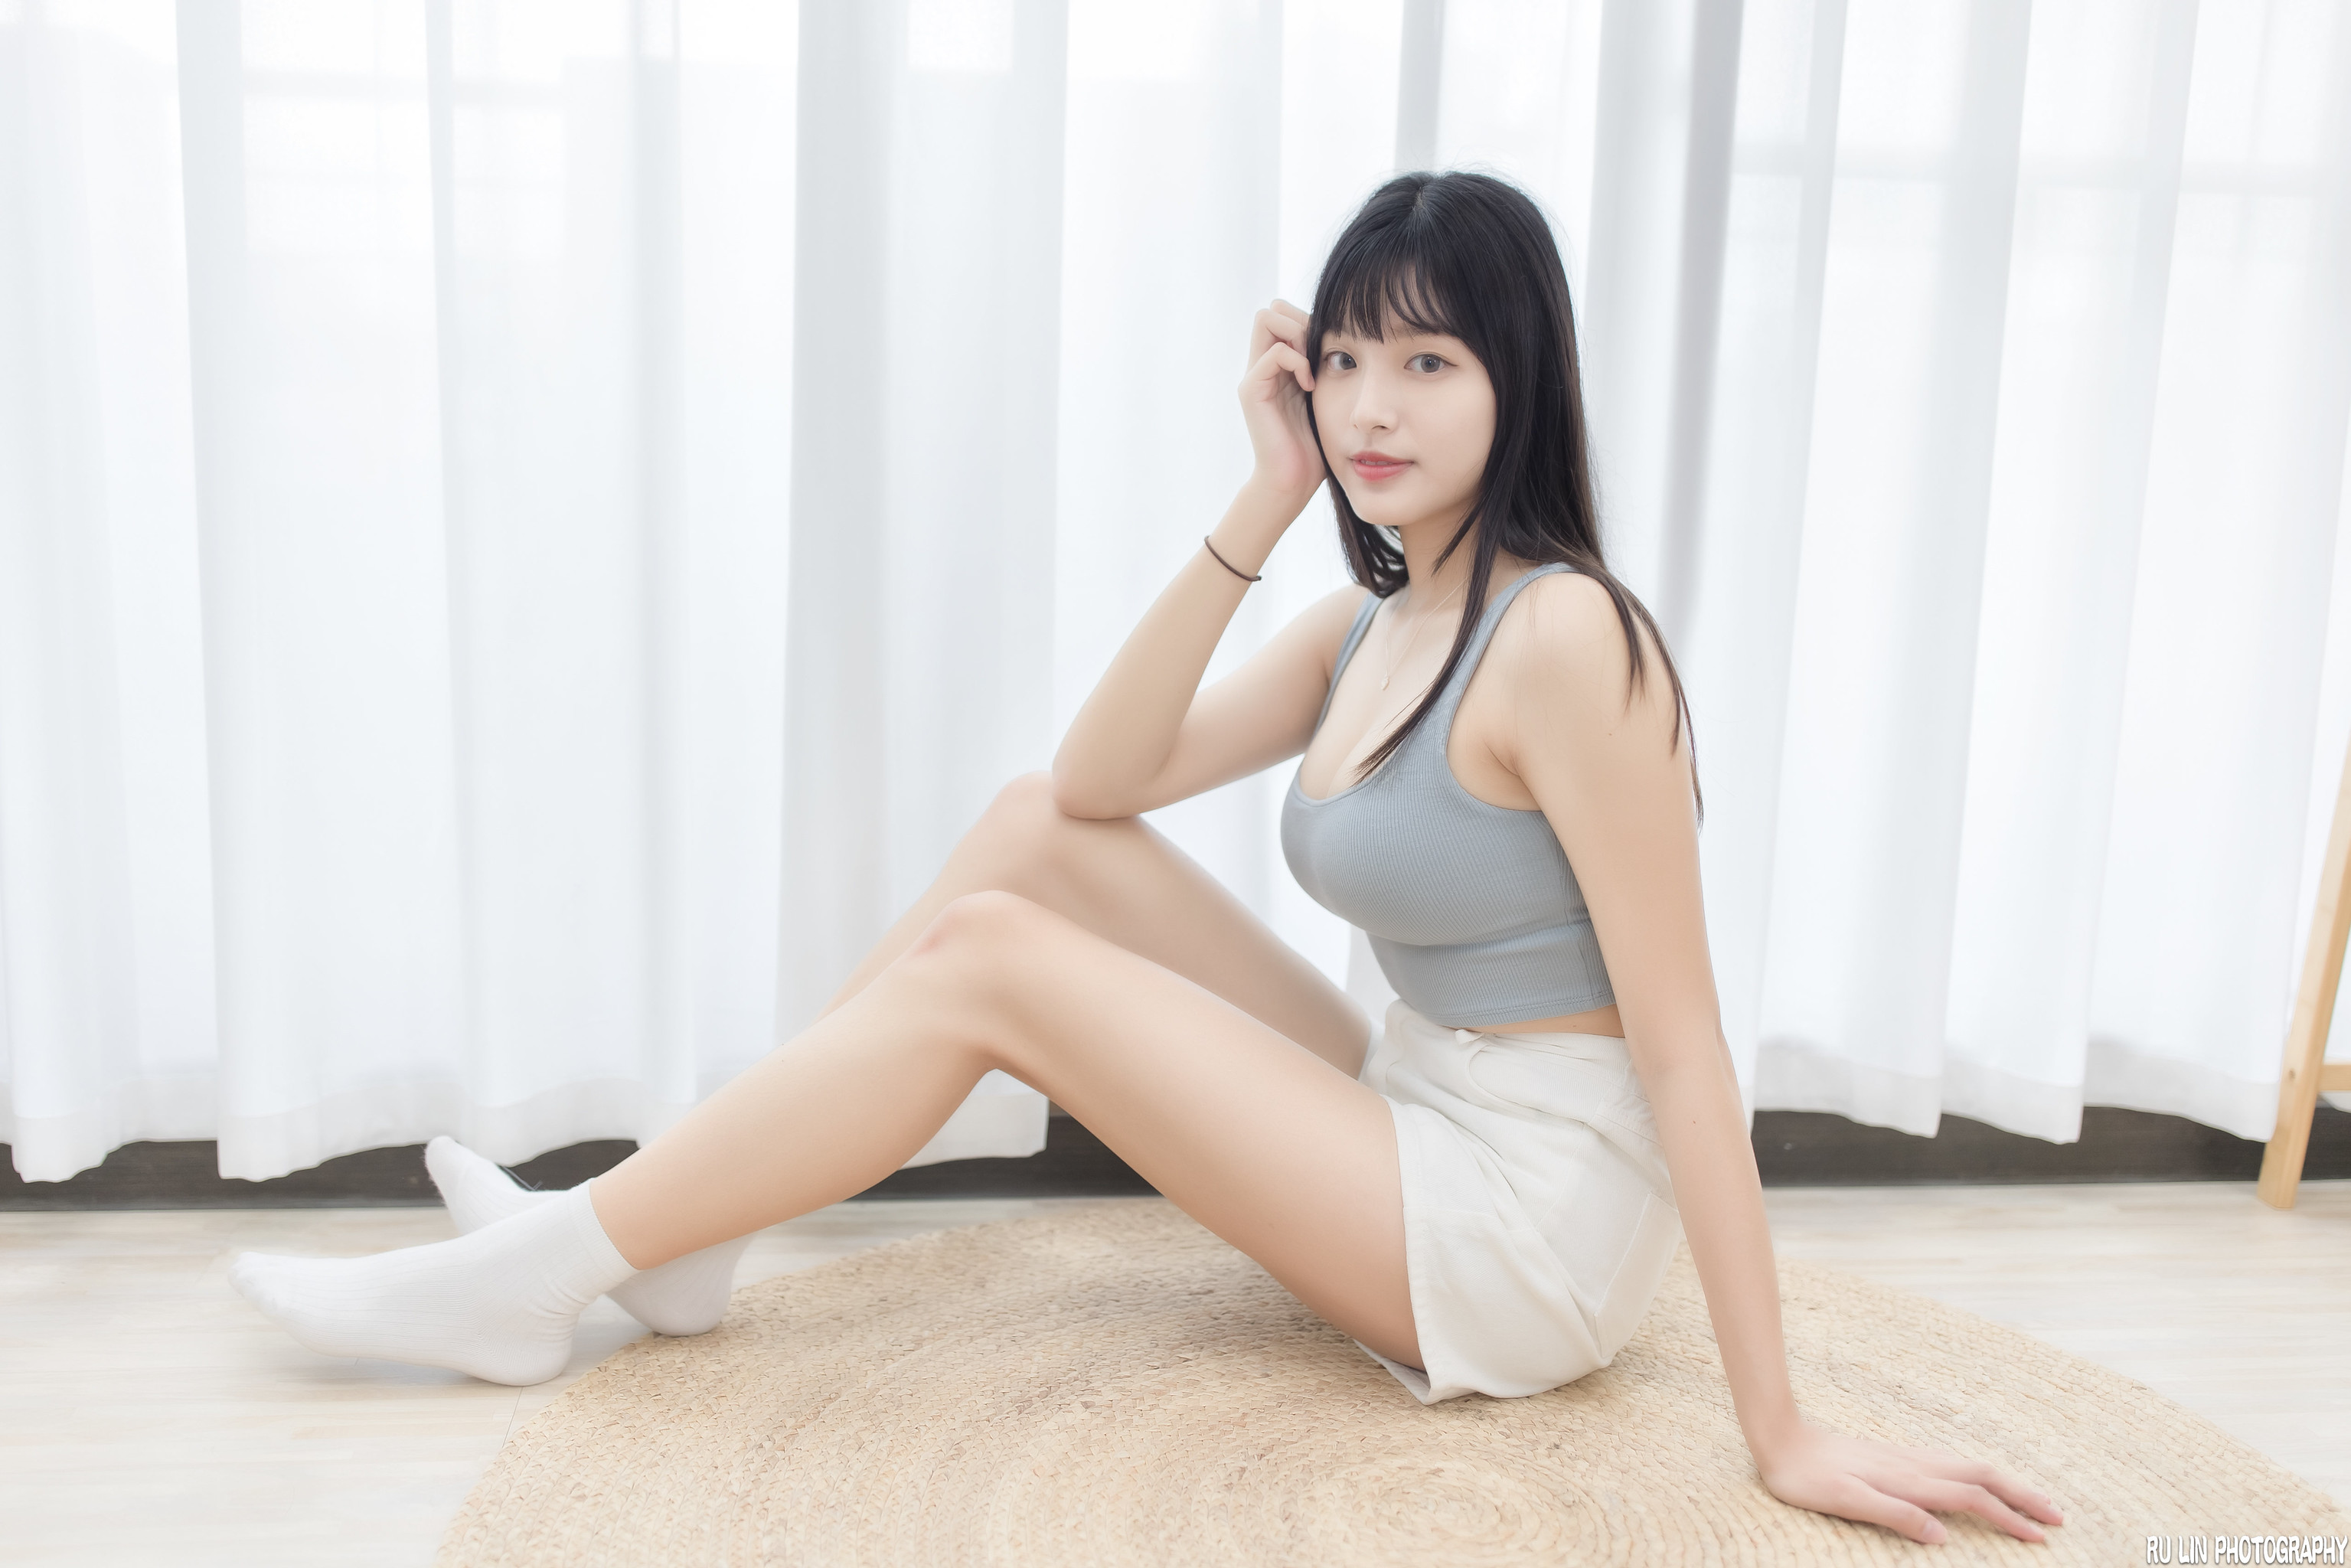 Ru Lin Women Asian Dark Hair Legs Bright 3071x2048